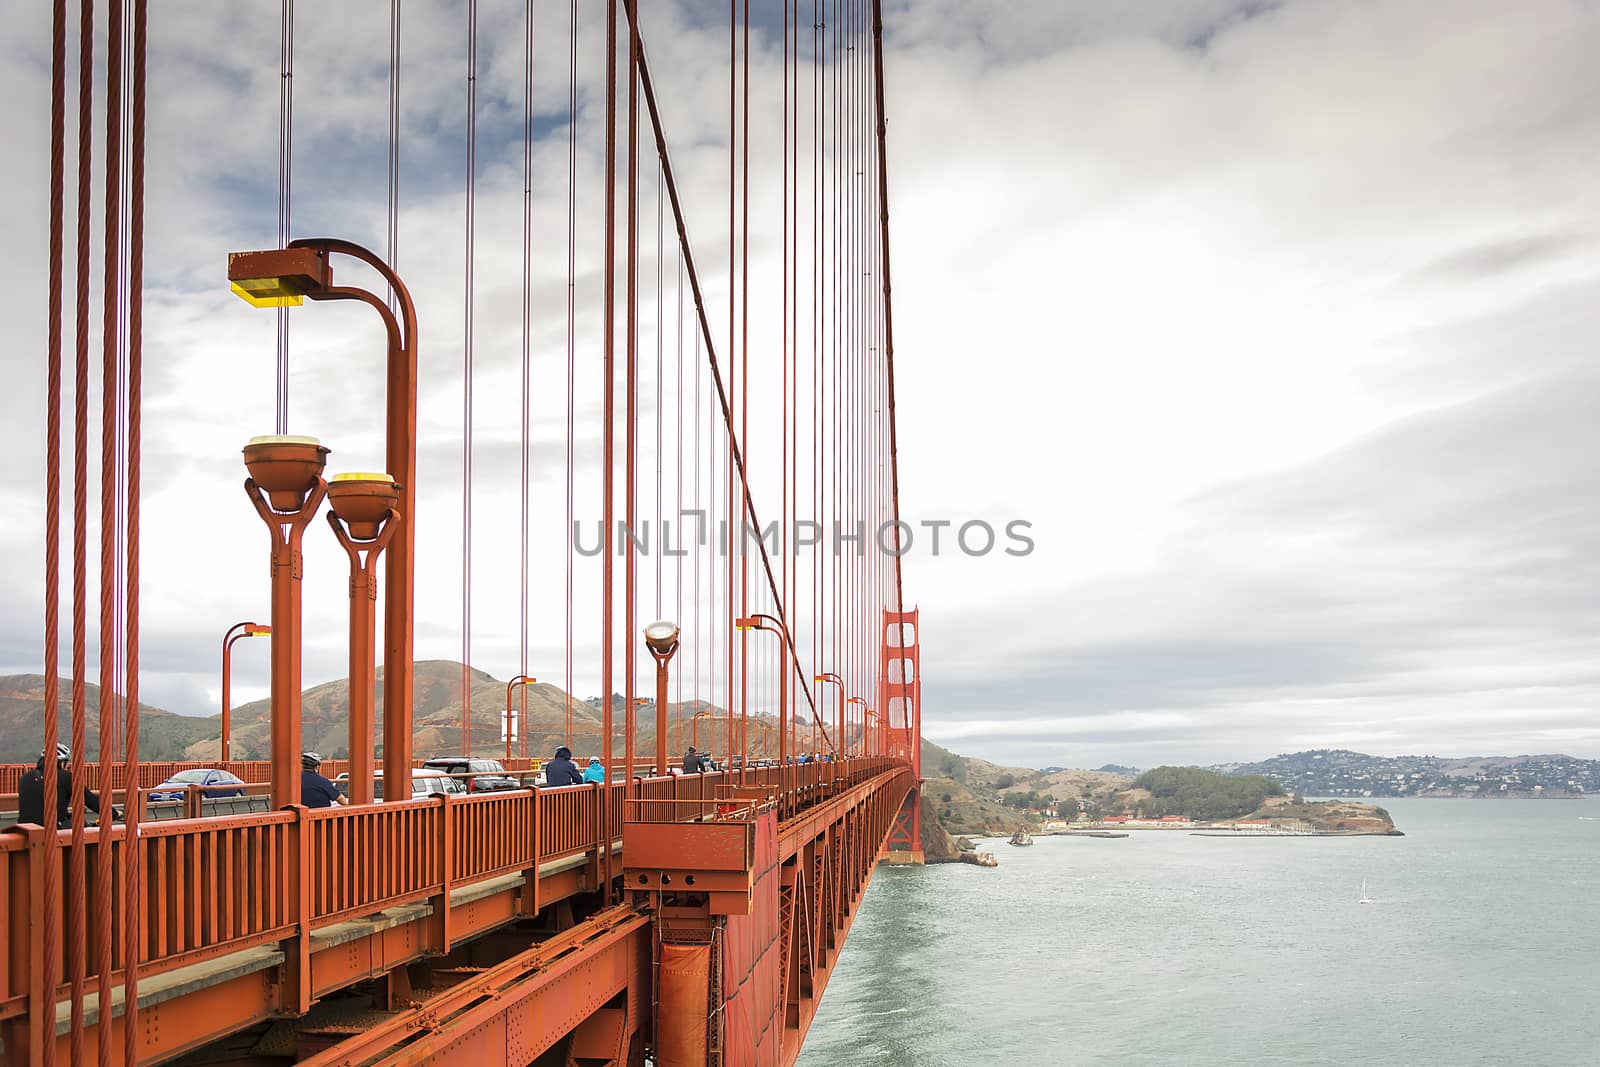 San Francisco, CA, USA, october 24, 2016: detail of the Golden Gate suspension bridge, San Francisco California USA